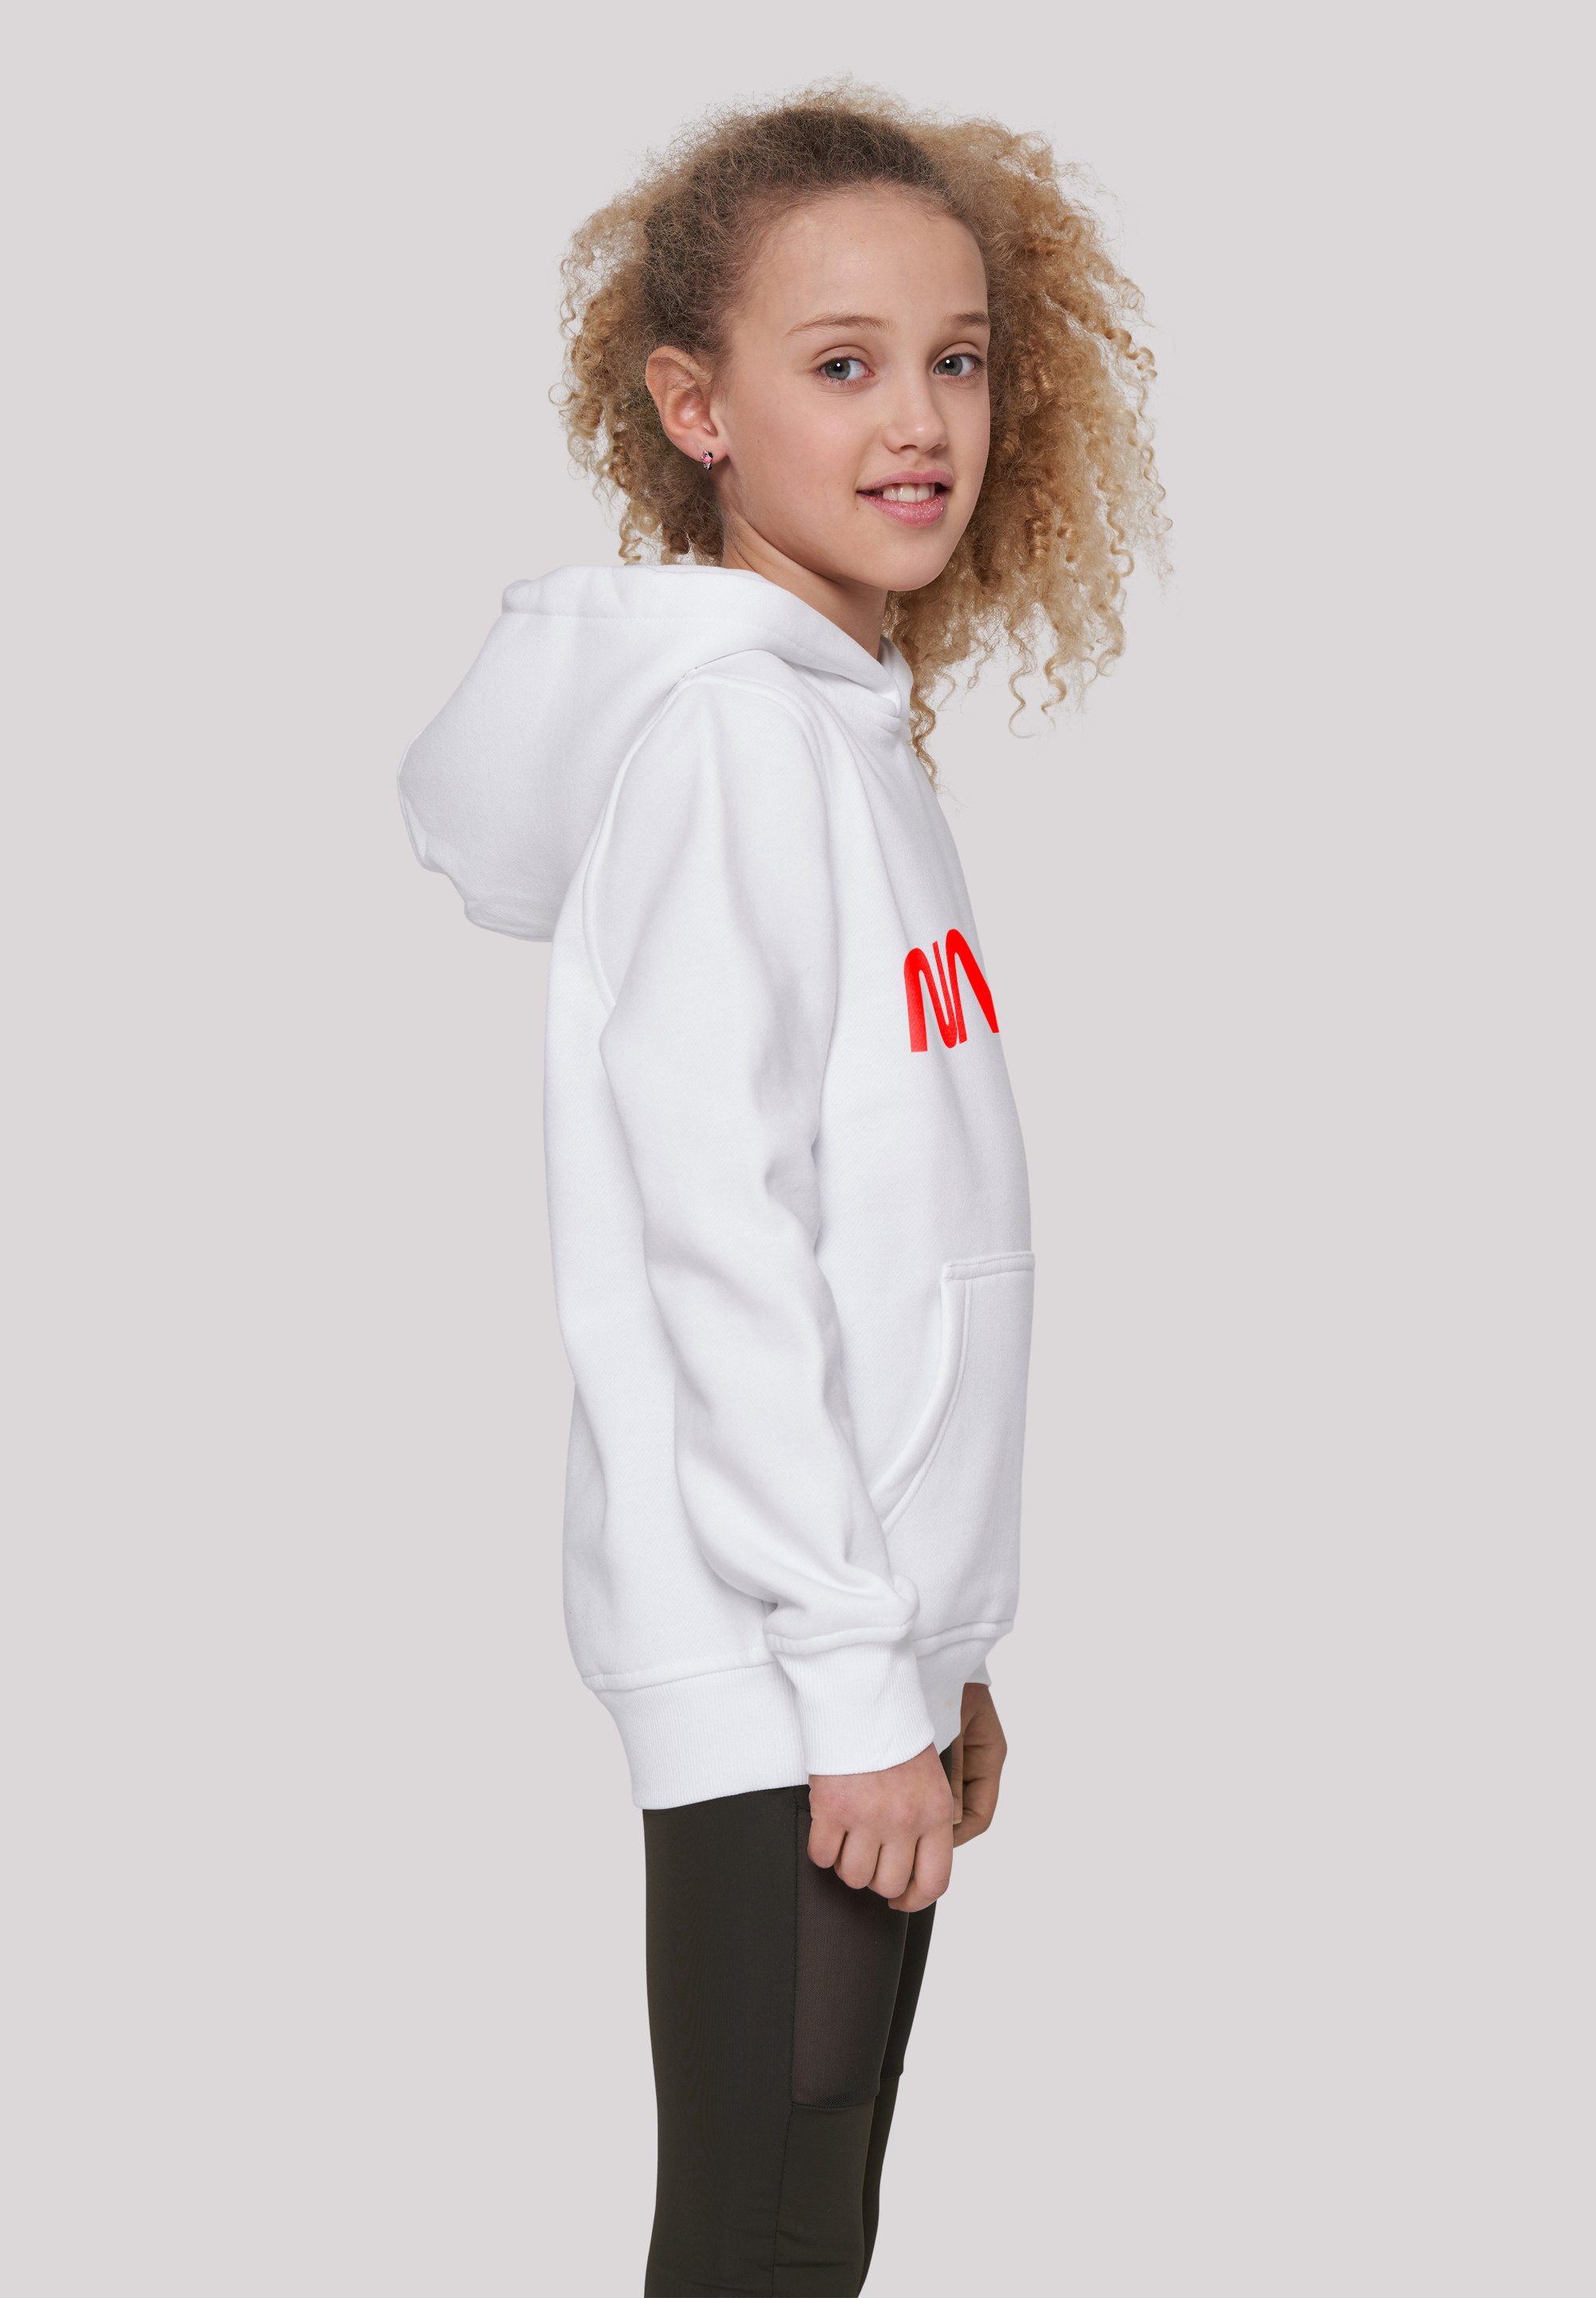 Logo Merch,Jungen,Mädchen,Bedruckt NASA Sweatshirt Unisex Kinder,Premium Modern F4NT4STIC White